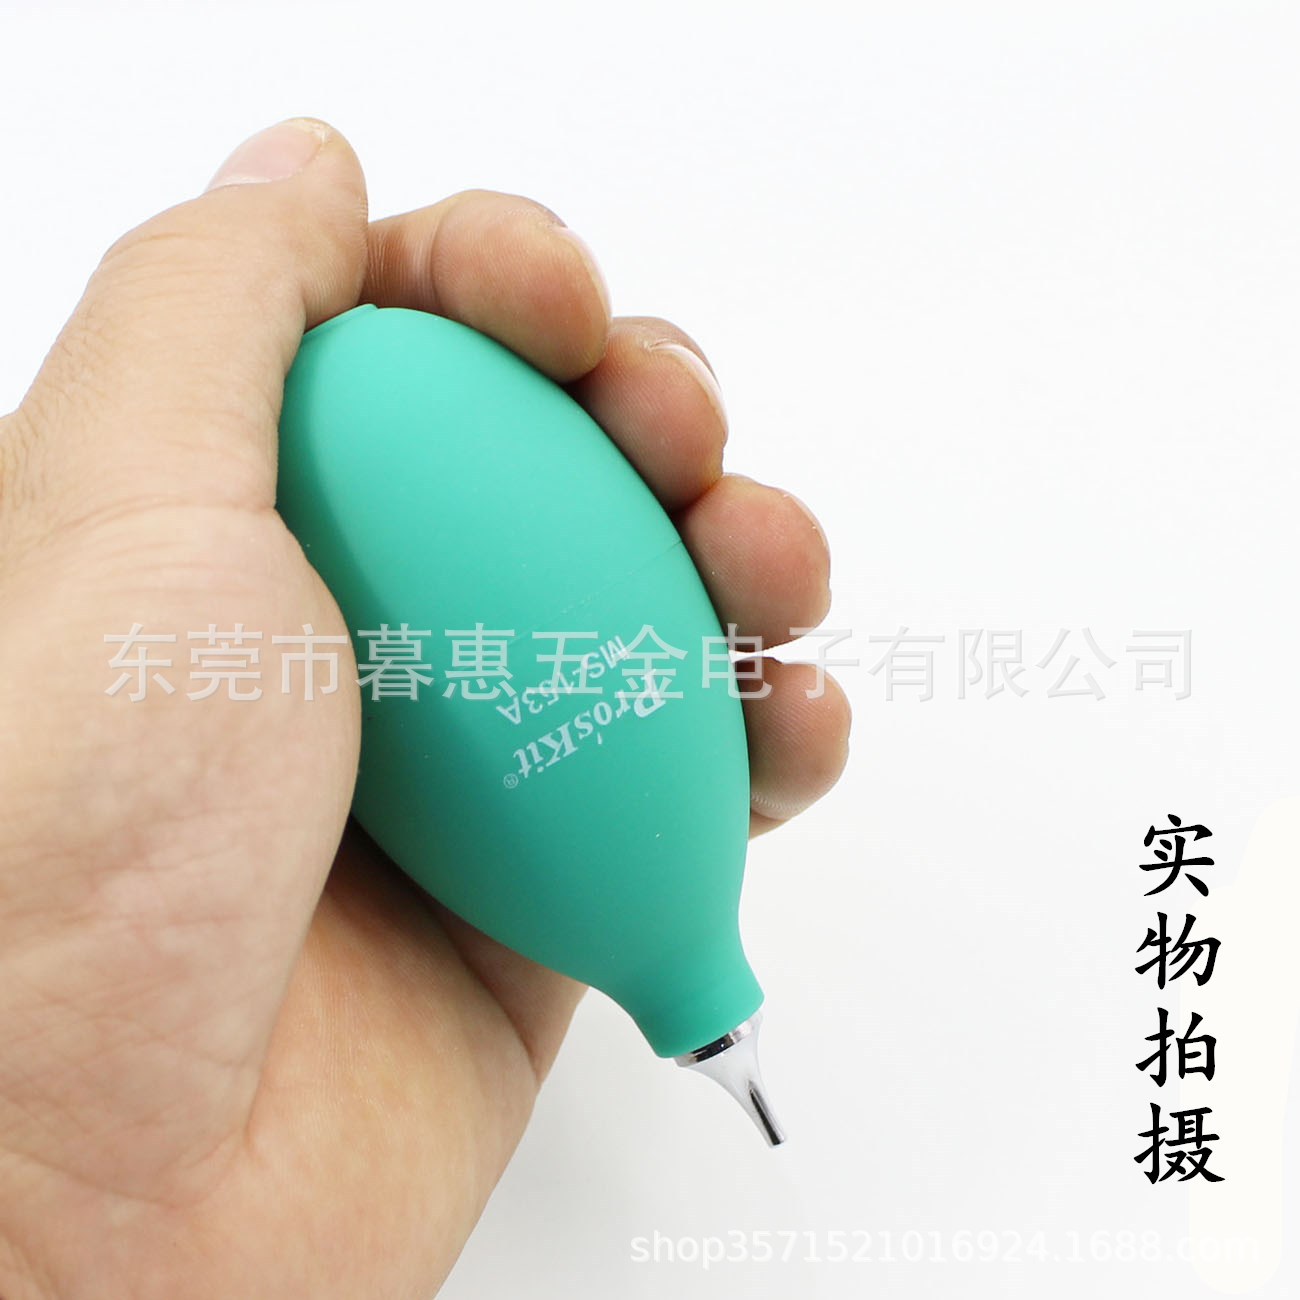 台湾宝工MS-153A吹风球皮老虎吹尘器吹气球气吹电脑键盘除尘清洁|ru